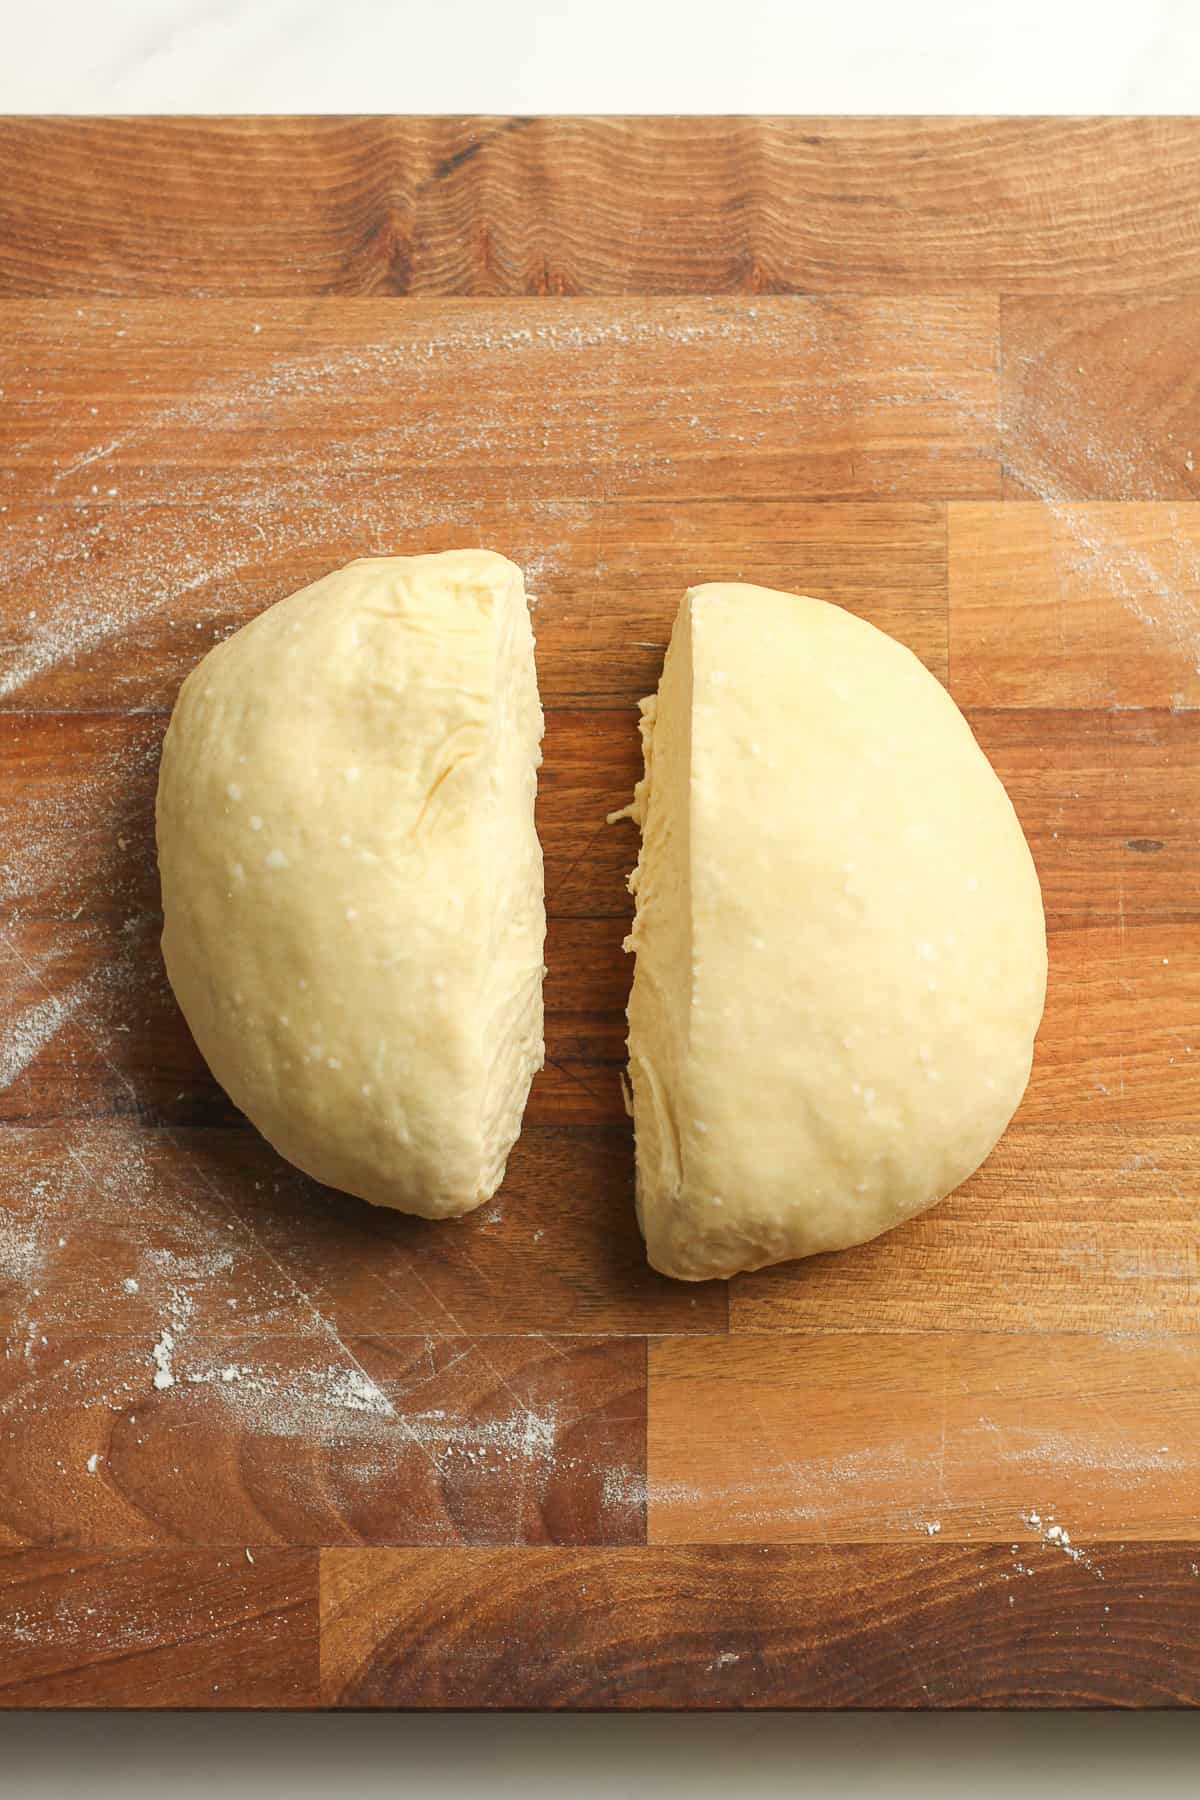 A round of flatbread dough cut in half.